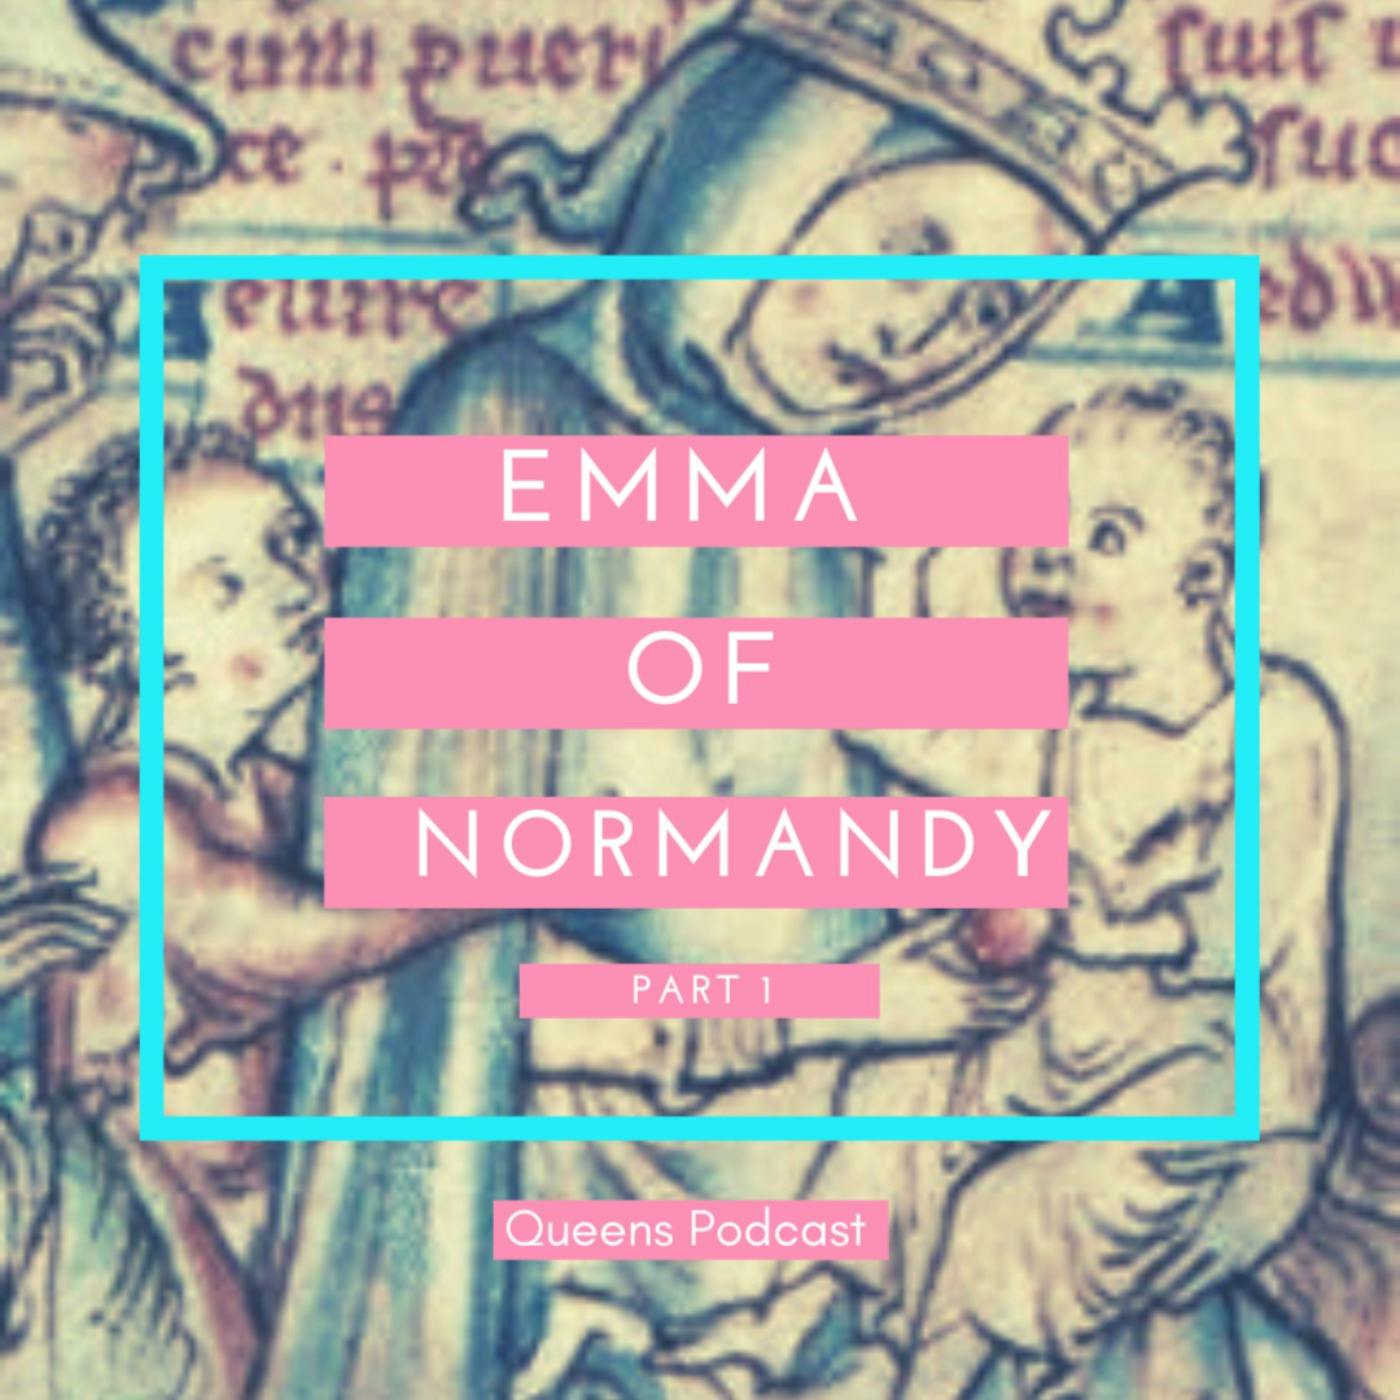 Emma of Normandy part 1